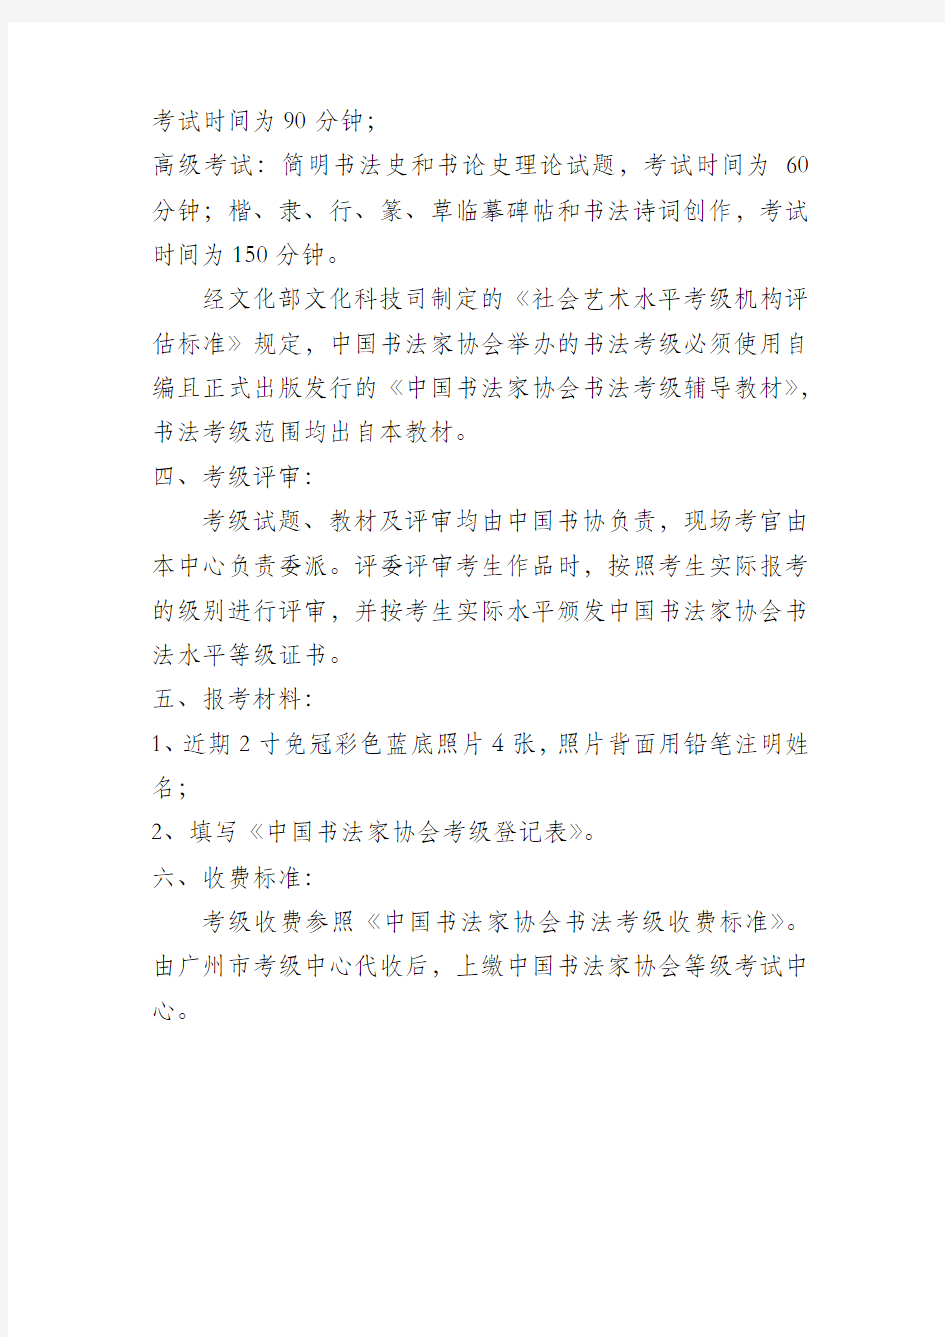 中国书法家协会书法等级考试是由文化部批准的全国范围内的专业性考试